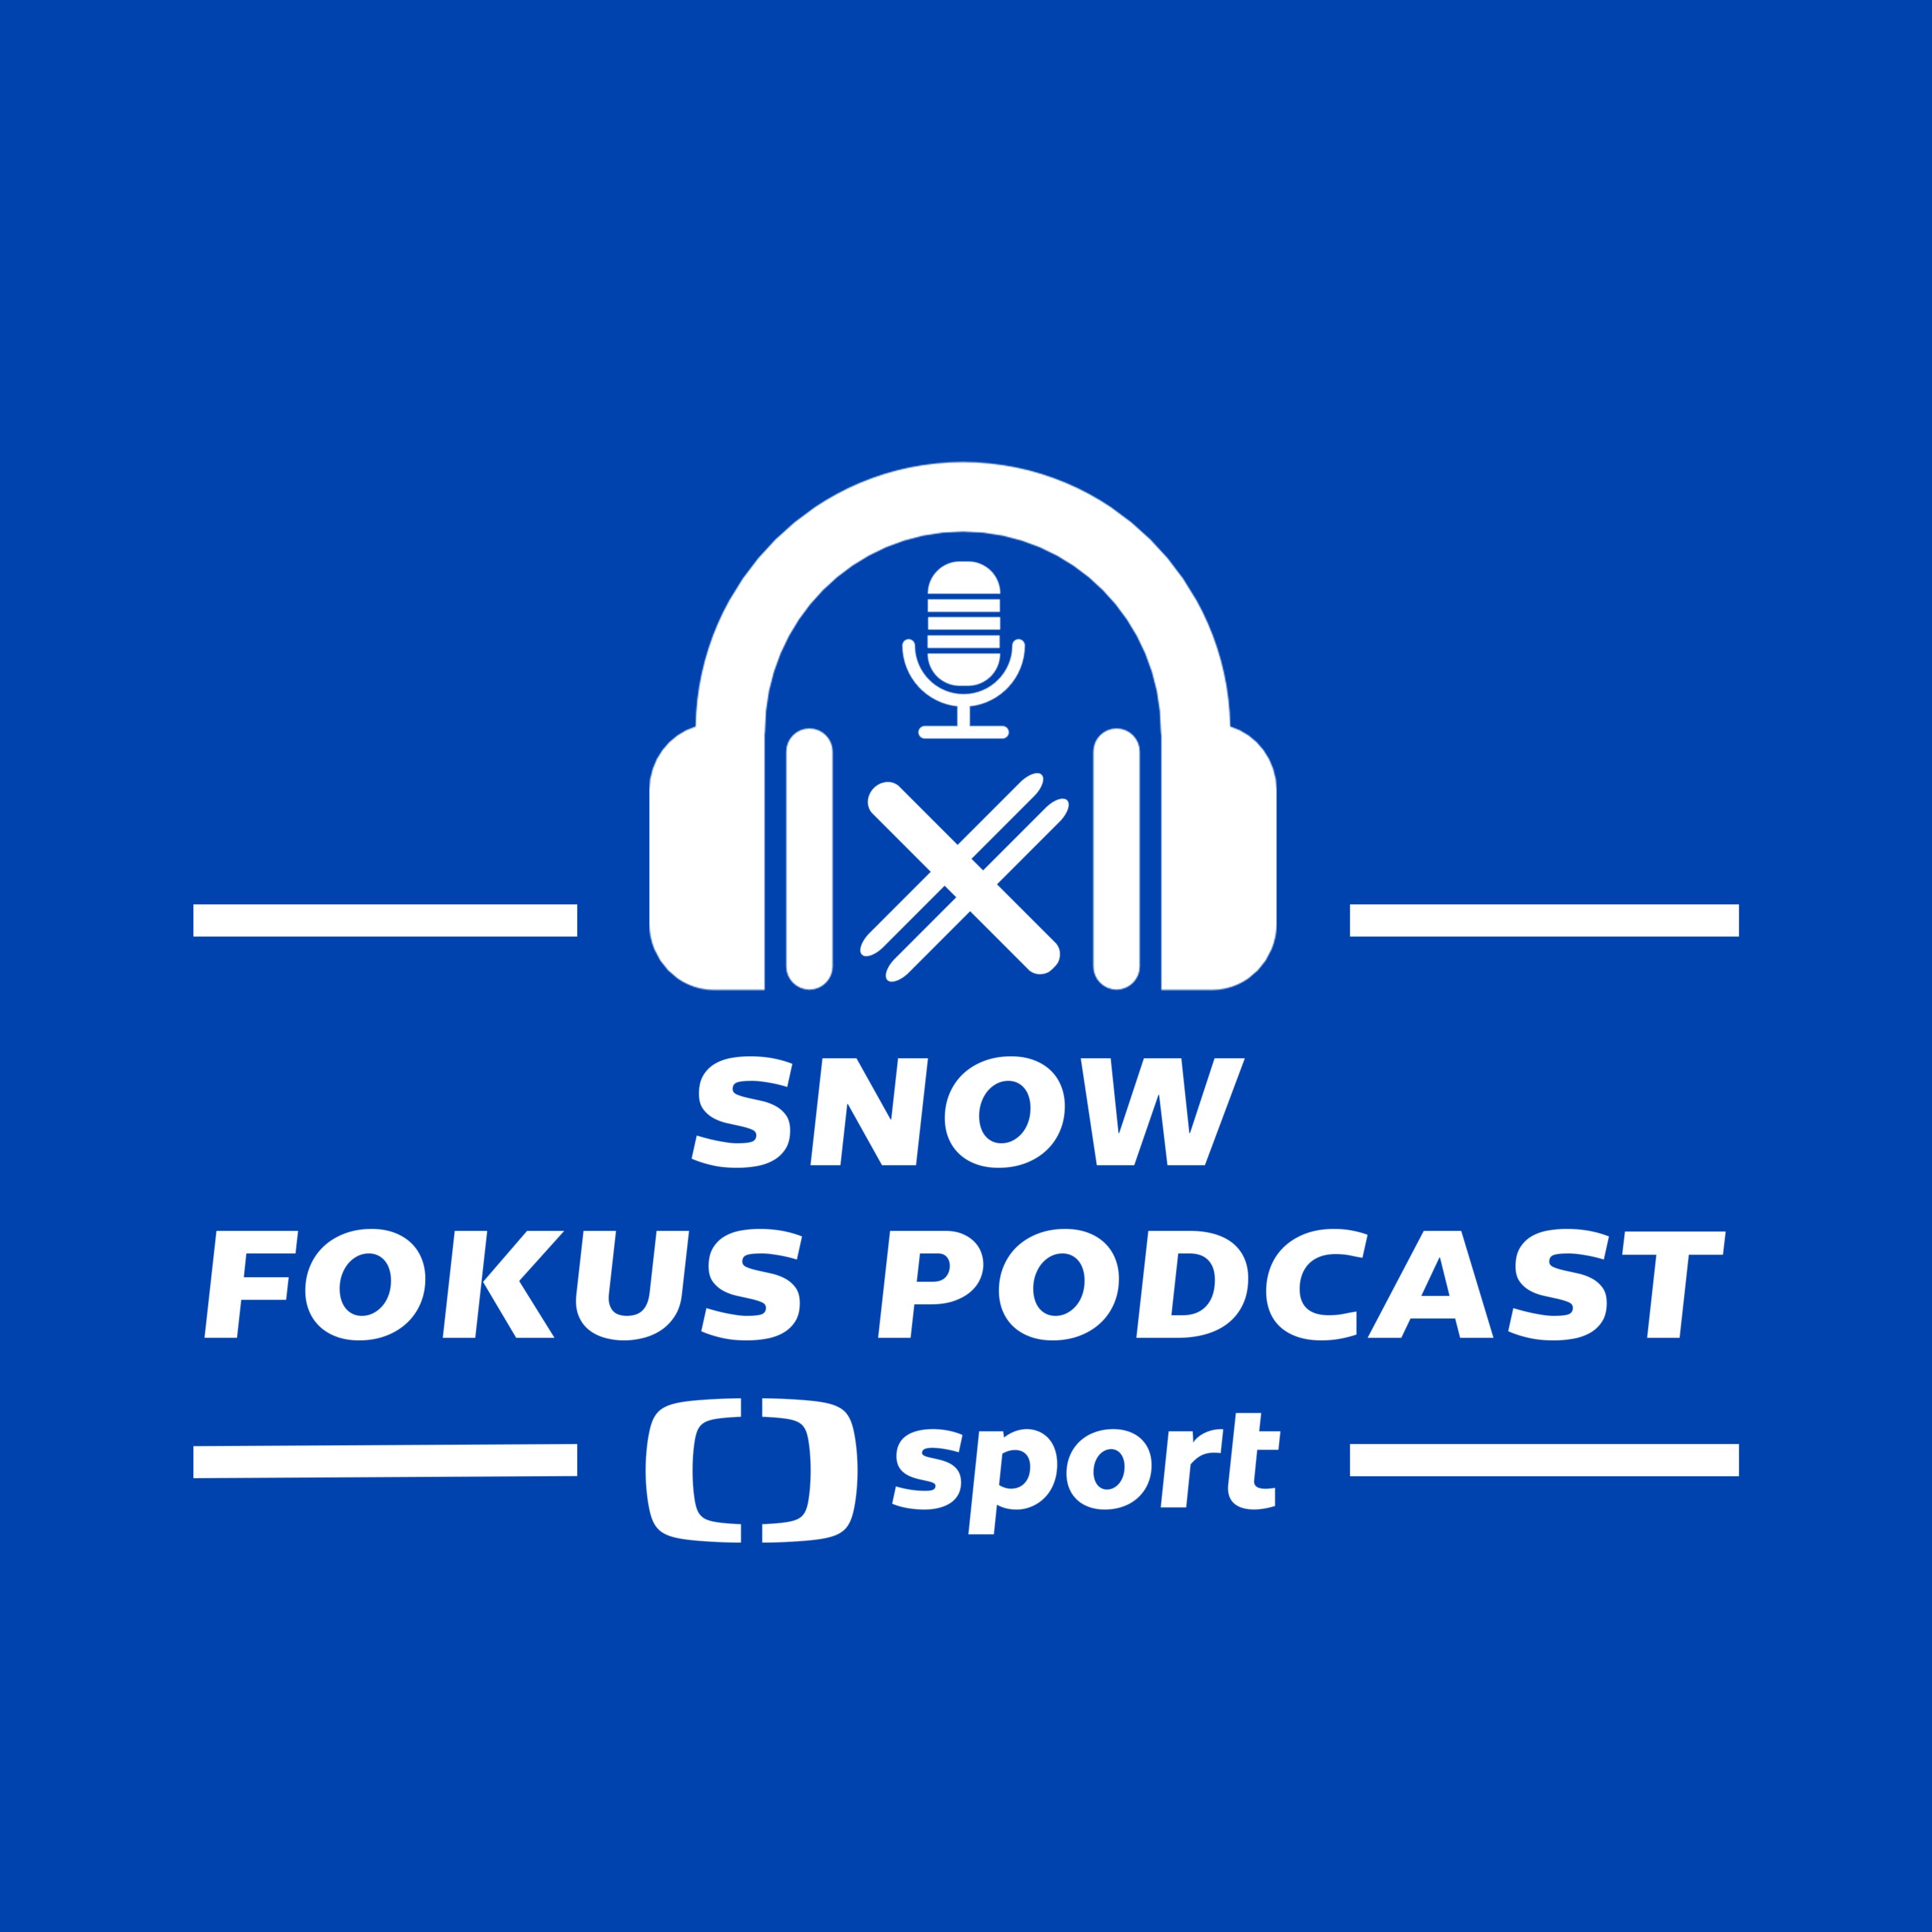 Snow fokus podcast: Lyžaři začínají. Co čekat od rakouského prologu?